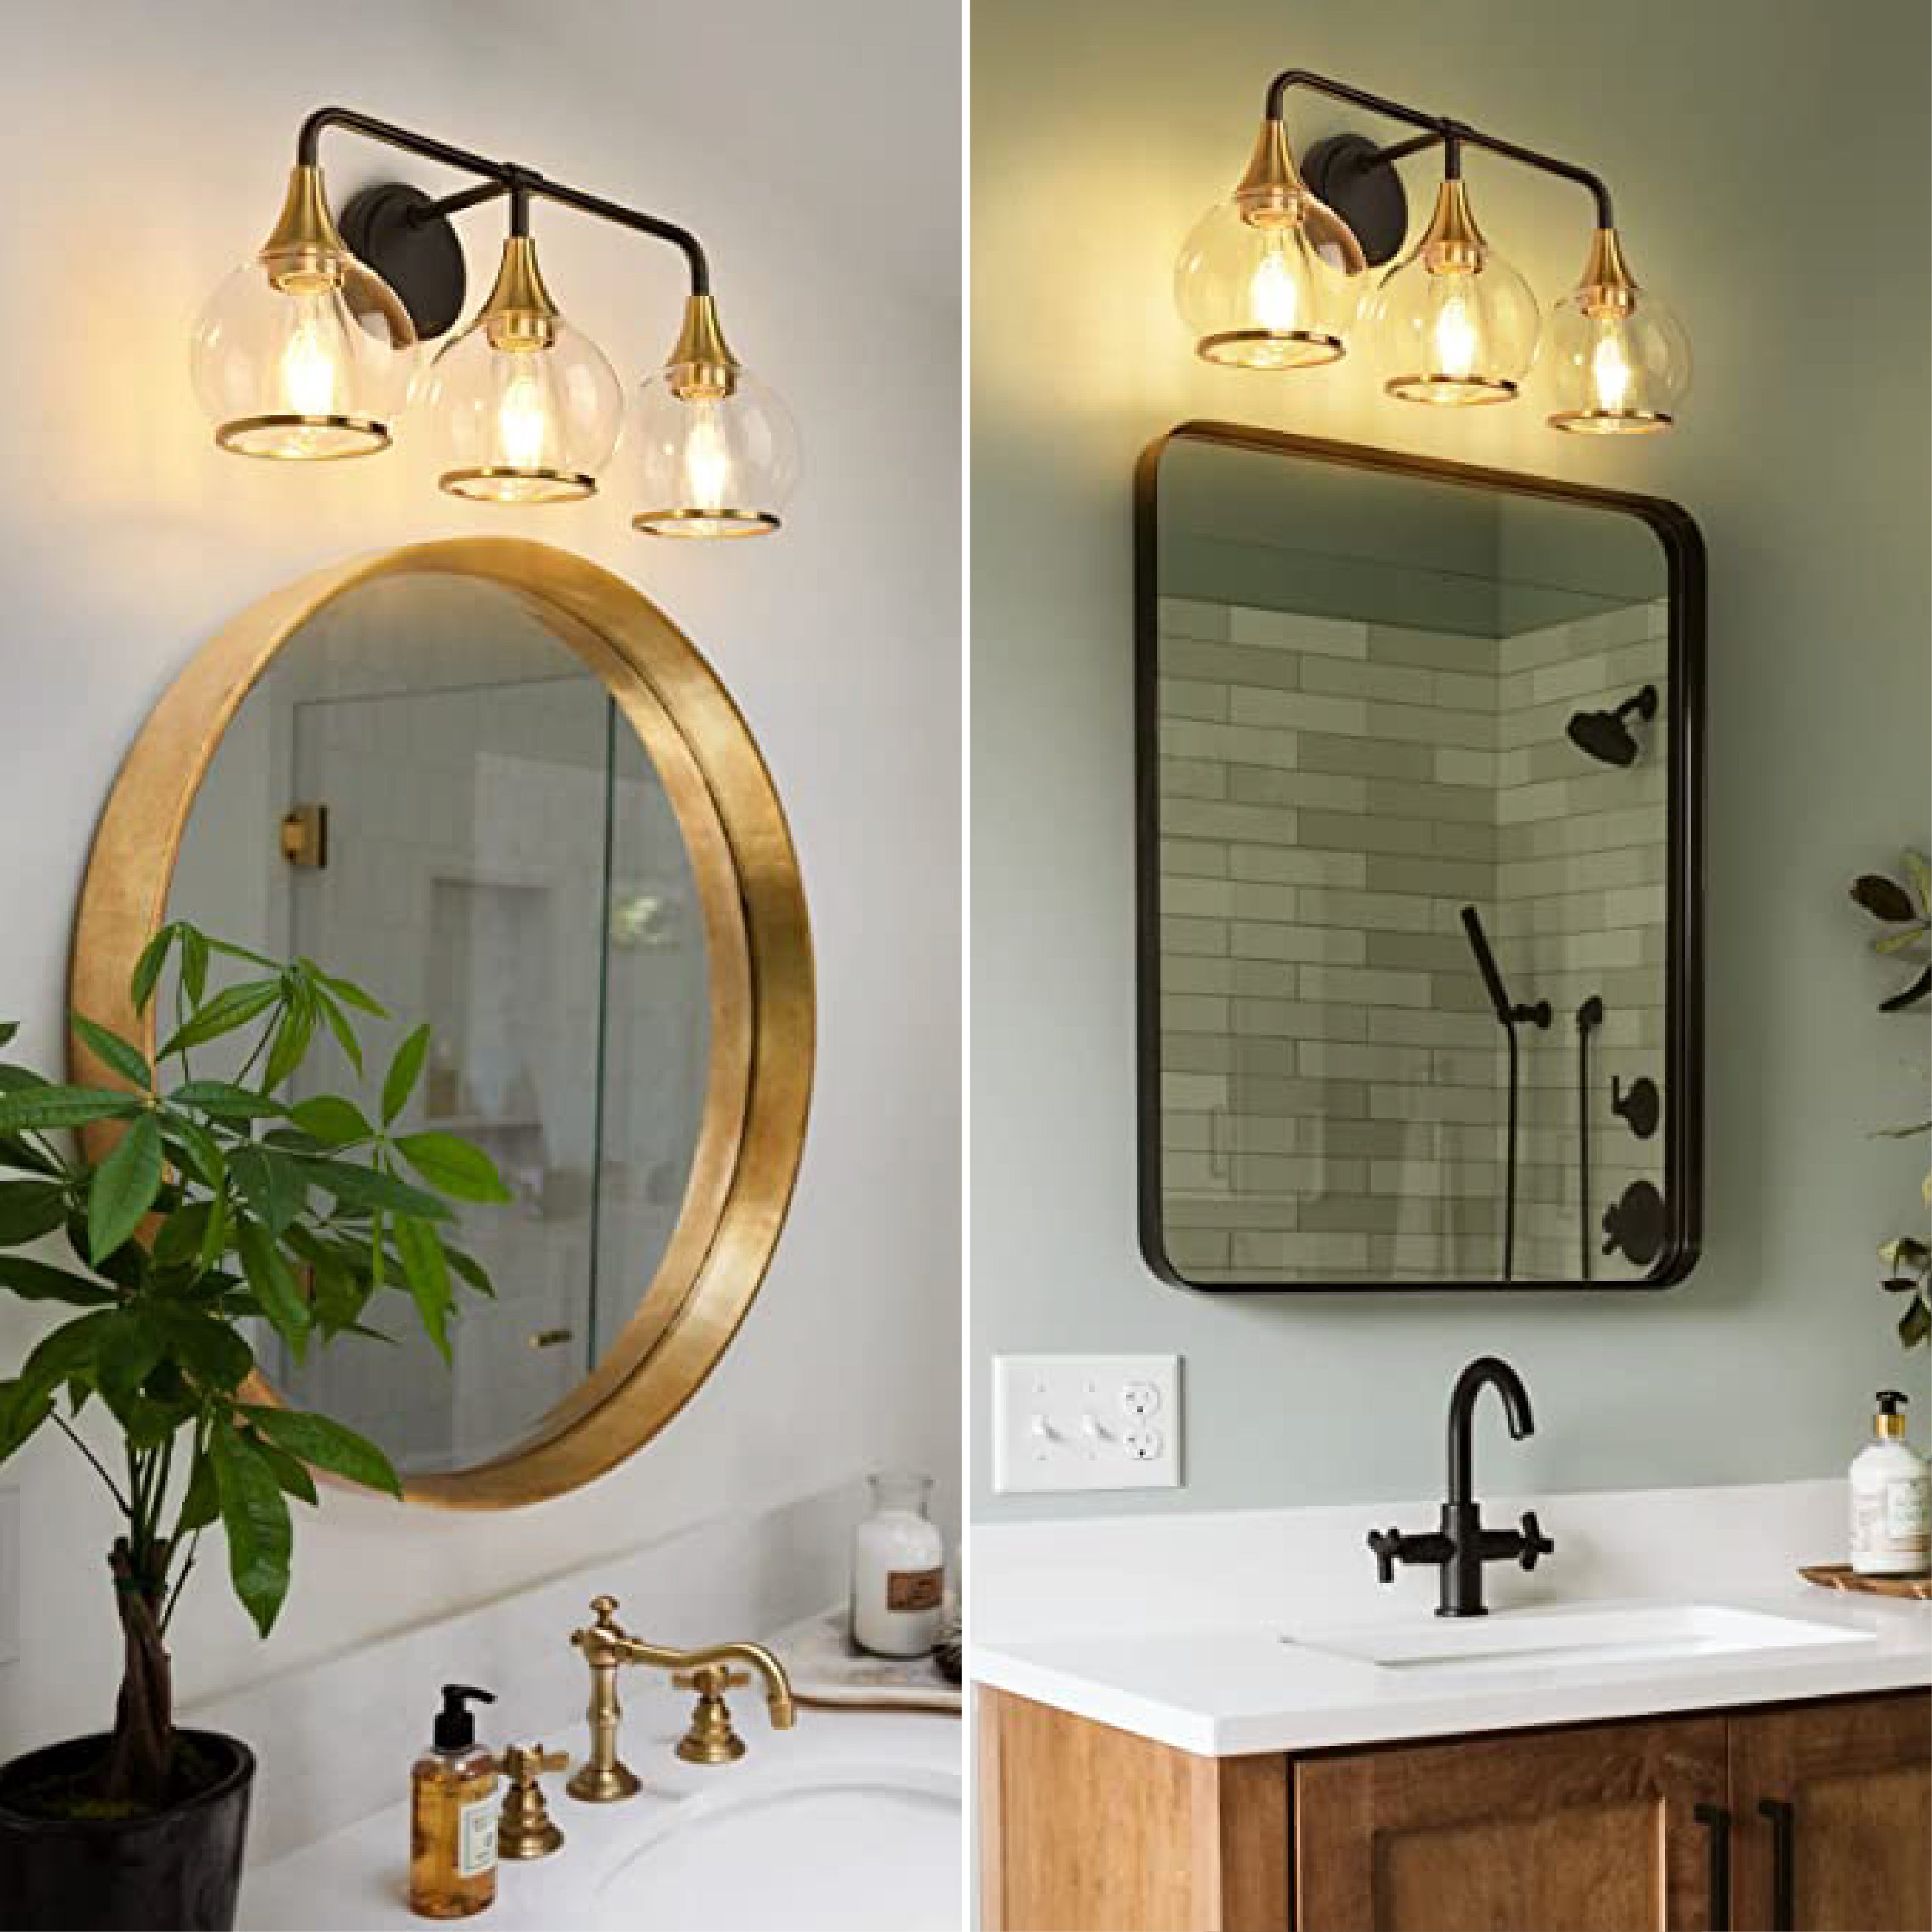 3-Lights bathroom vanity light fixture Black and Gold bathroom wall light fixtures Metal bath vanity light